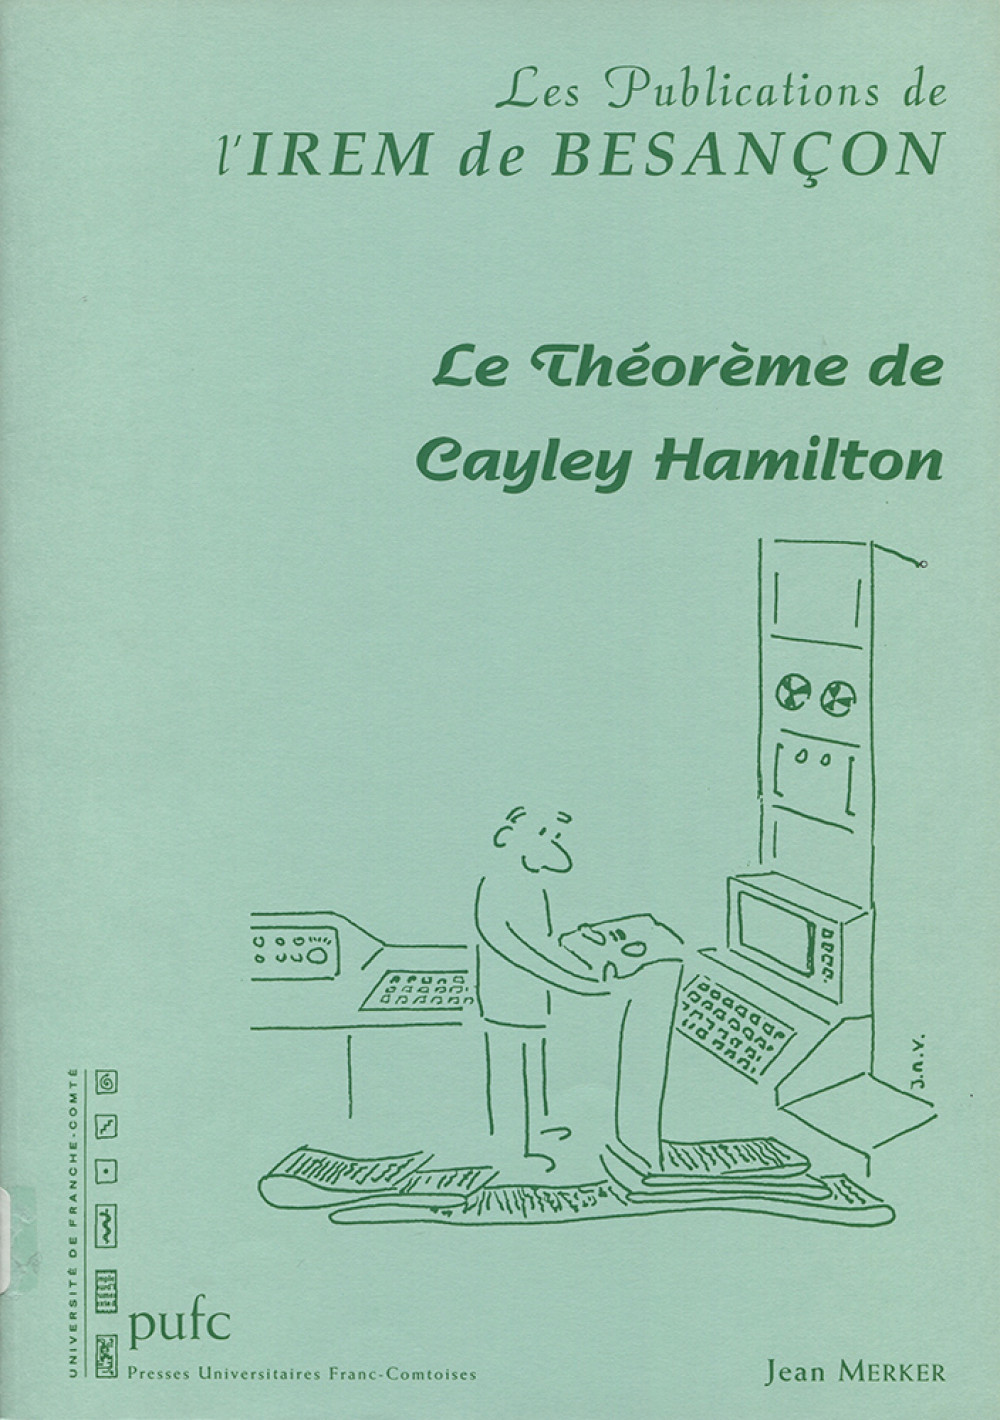 Le théorème de Cayley Hamilton